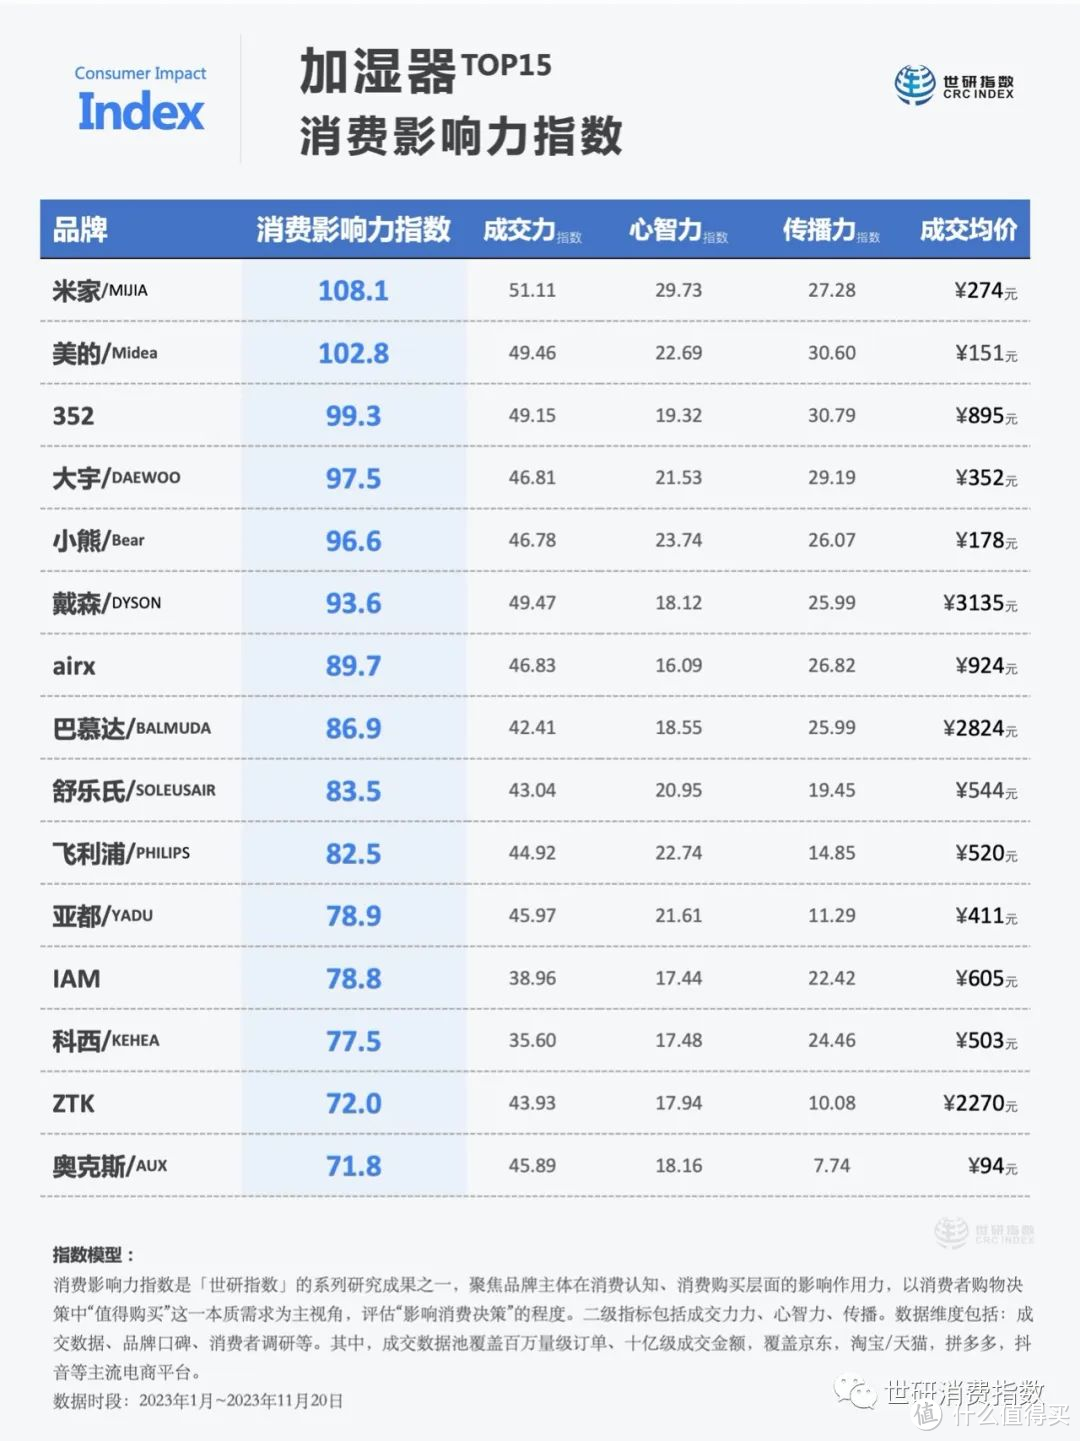 加湿器TOP15品牌【2023消费影响力指数观察】